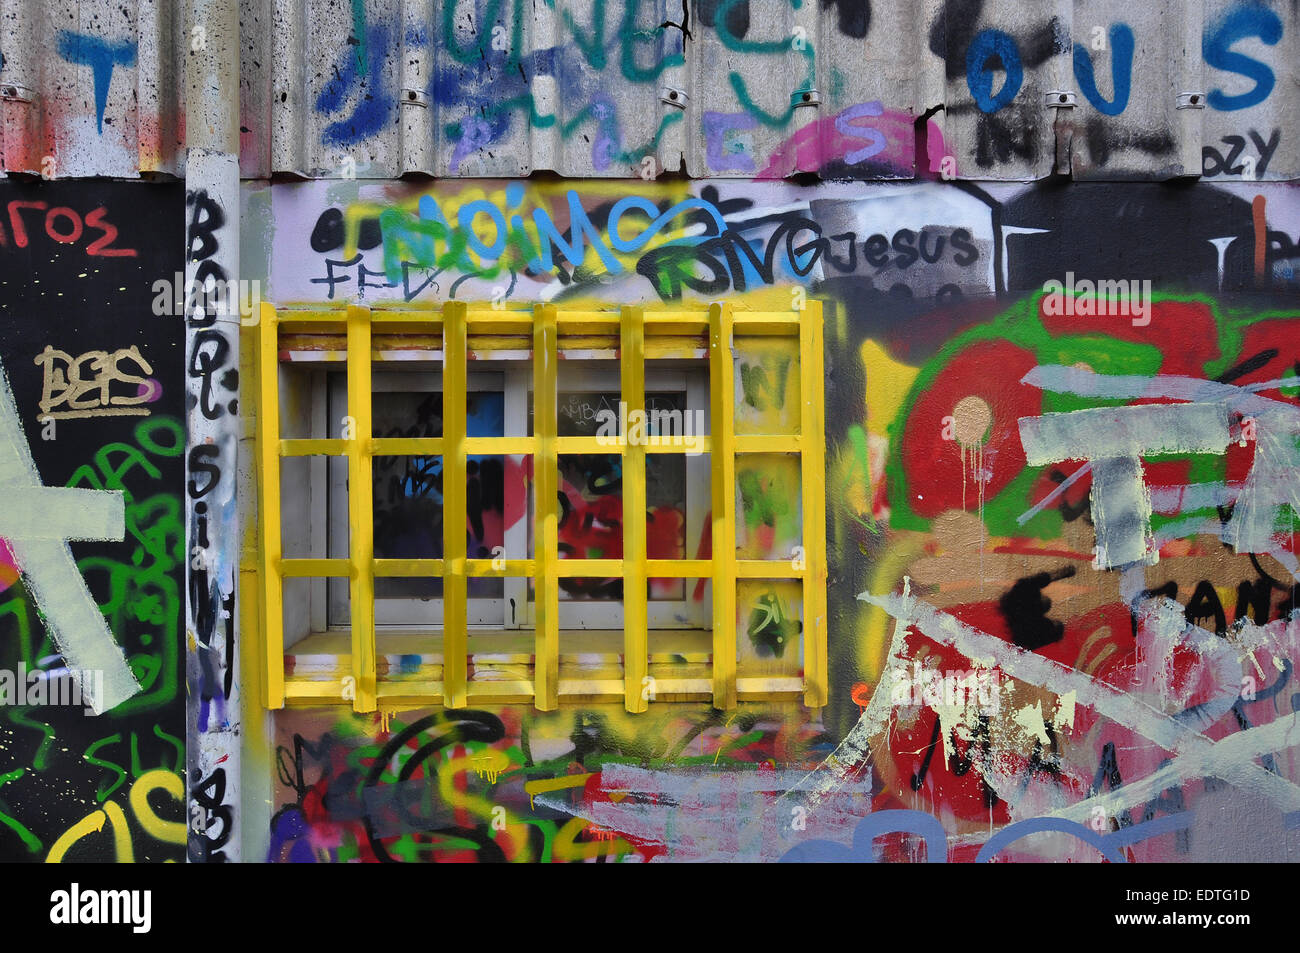 Finestra sbarrata e parete ricoperta con graffiti disordinato e macchie di vernice. Foto Stock